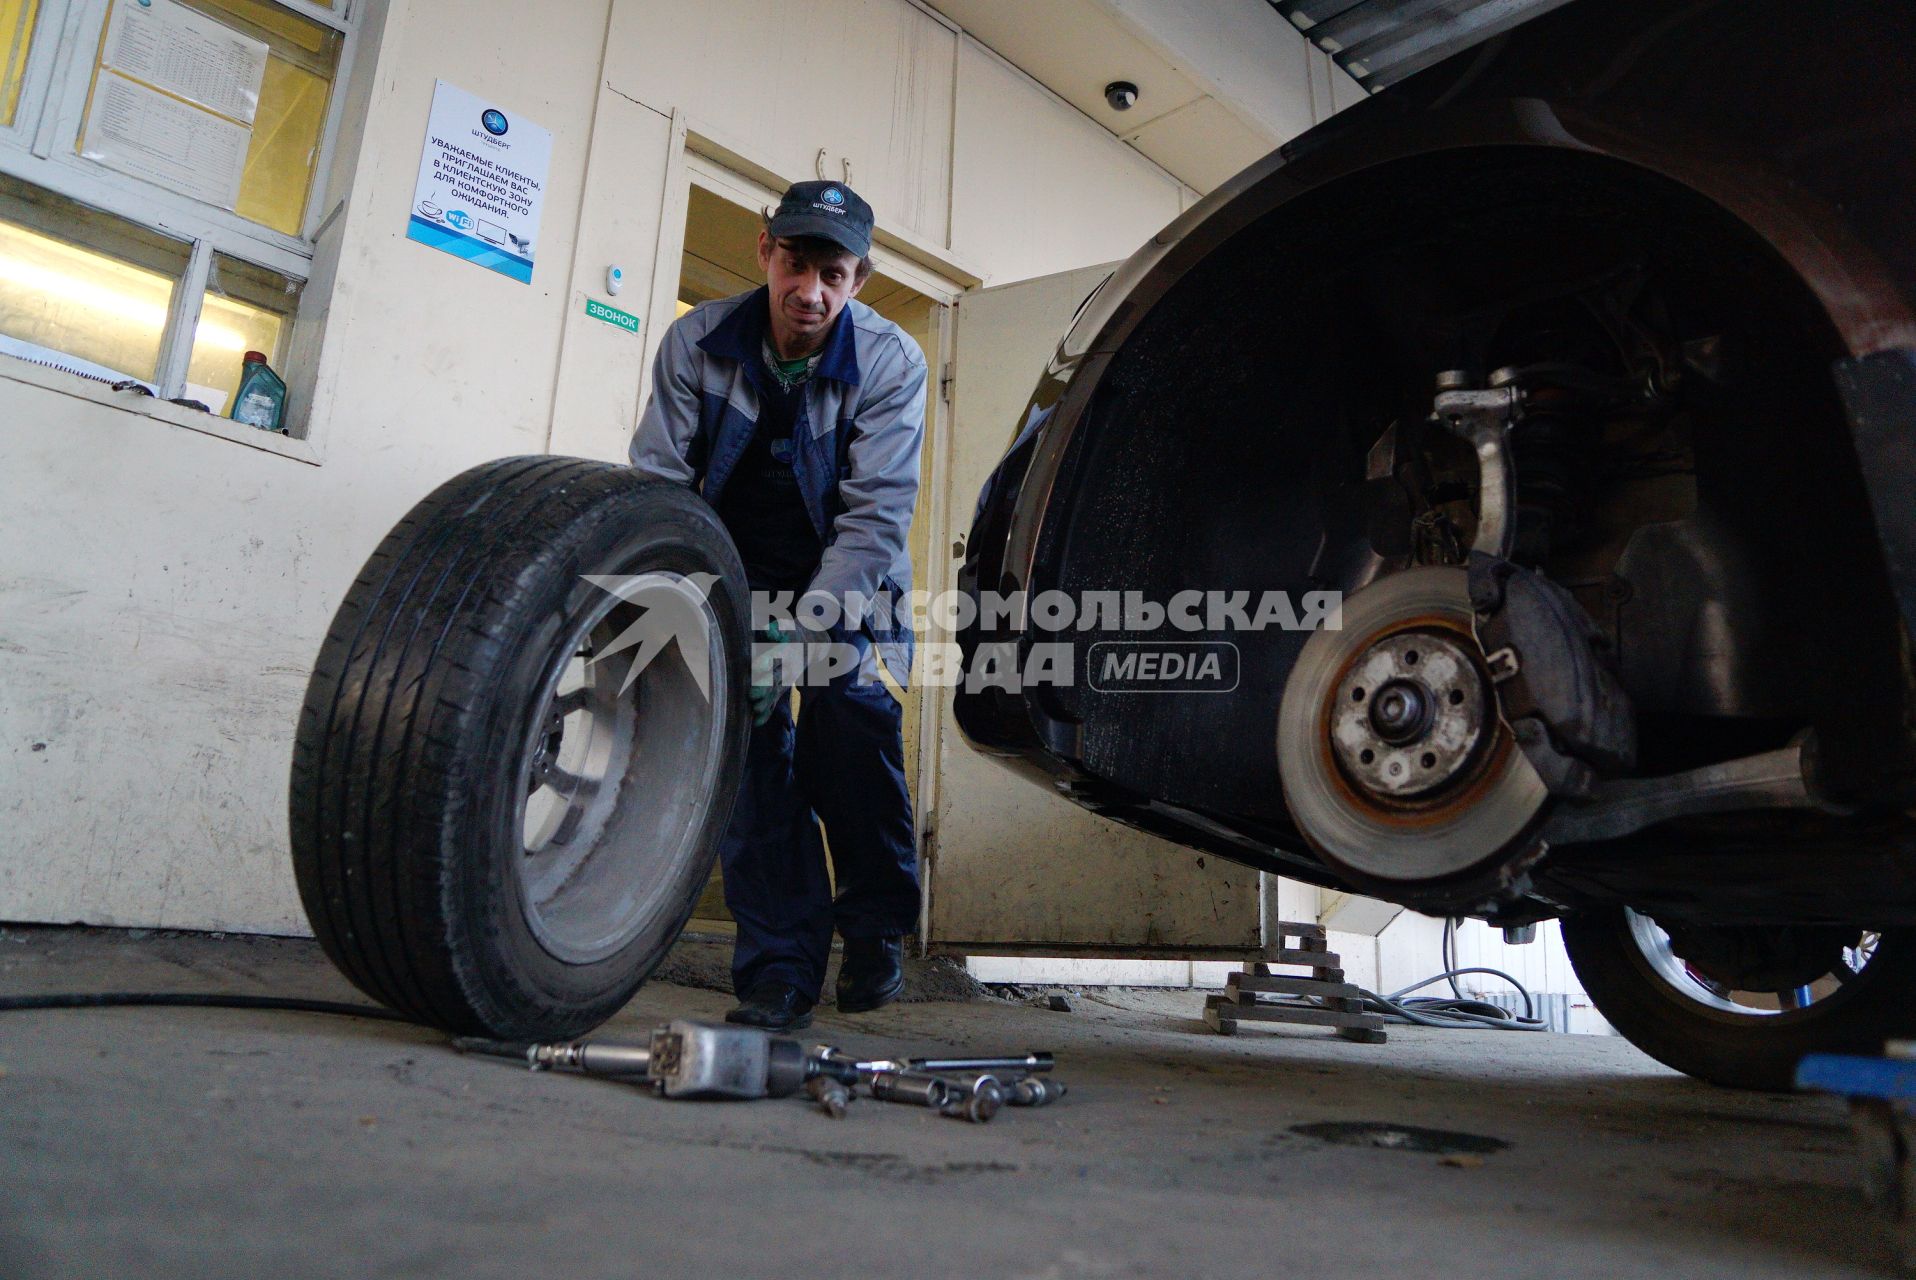 Екатеринбург. Сотрудник шиномонтажной мастерской меняет автомобильное колесо.